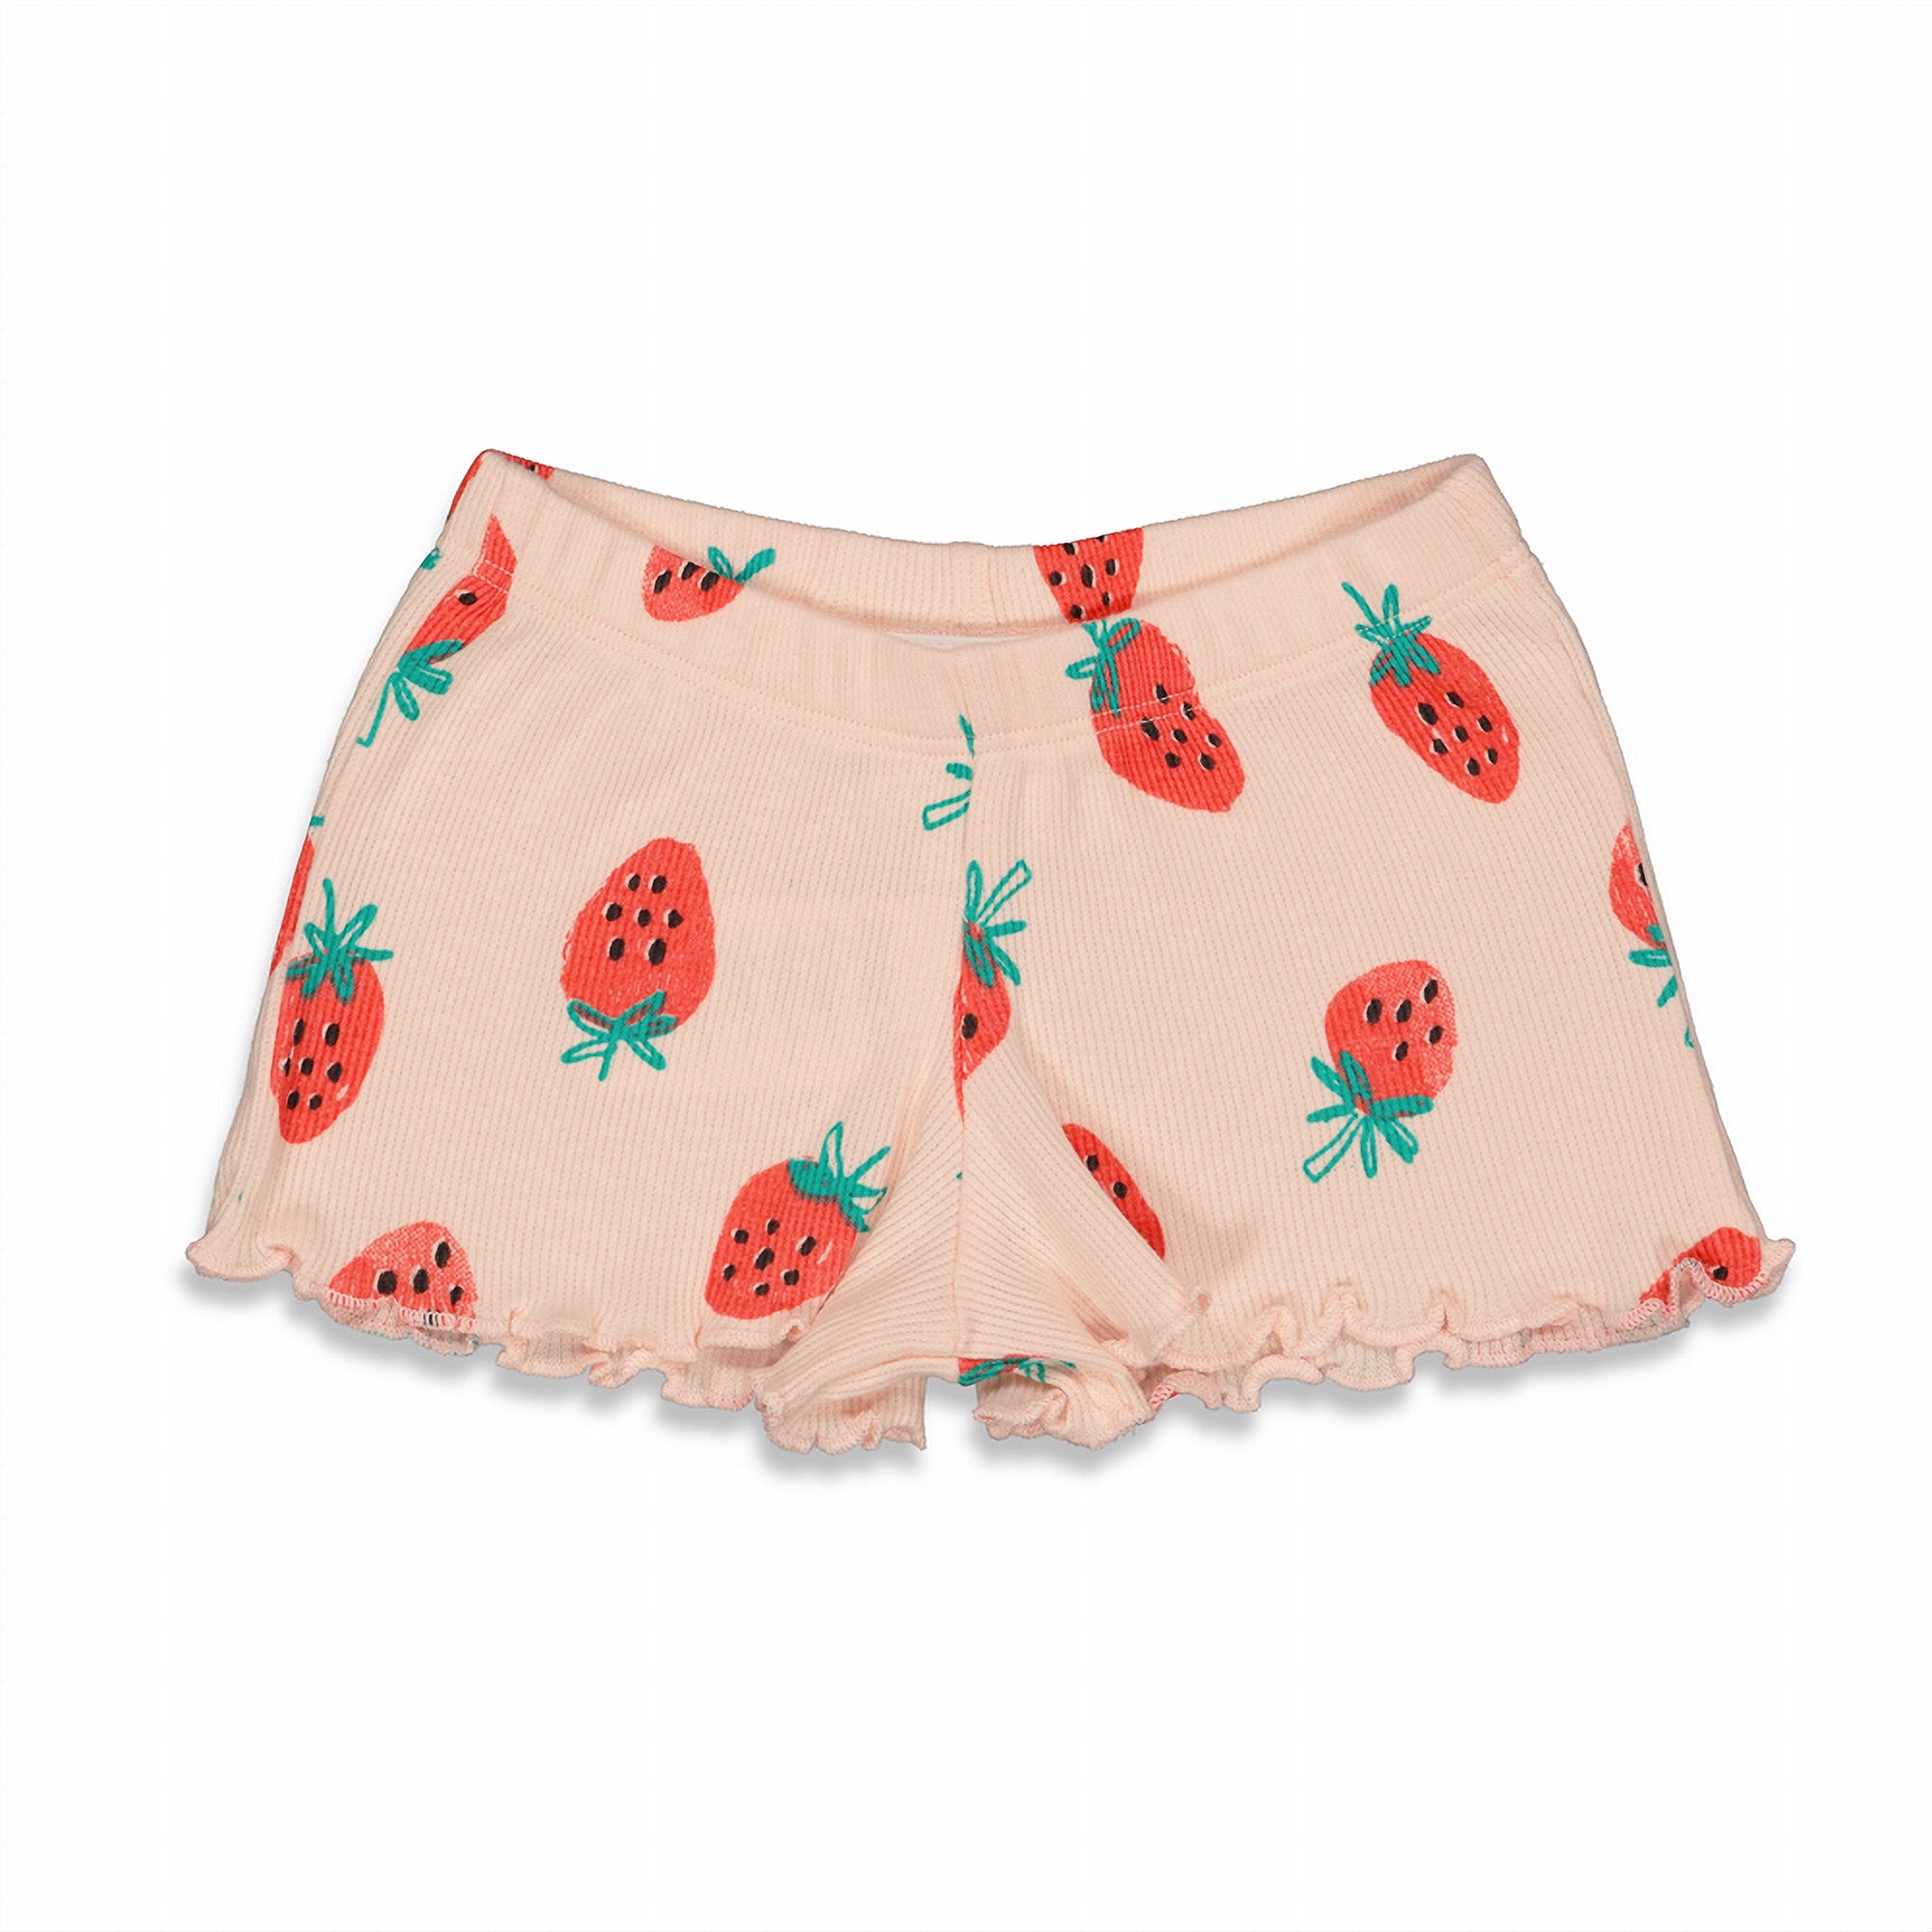 Meisjes Suzy Strawberry - Premium Summerwear by FEETJE van Feetje in de kleur Roze in maat 128.